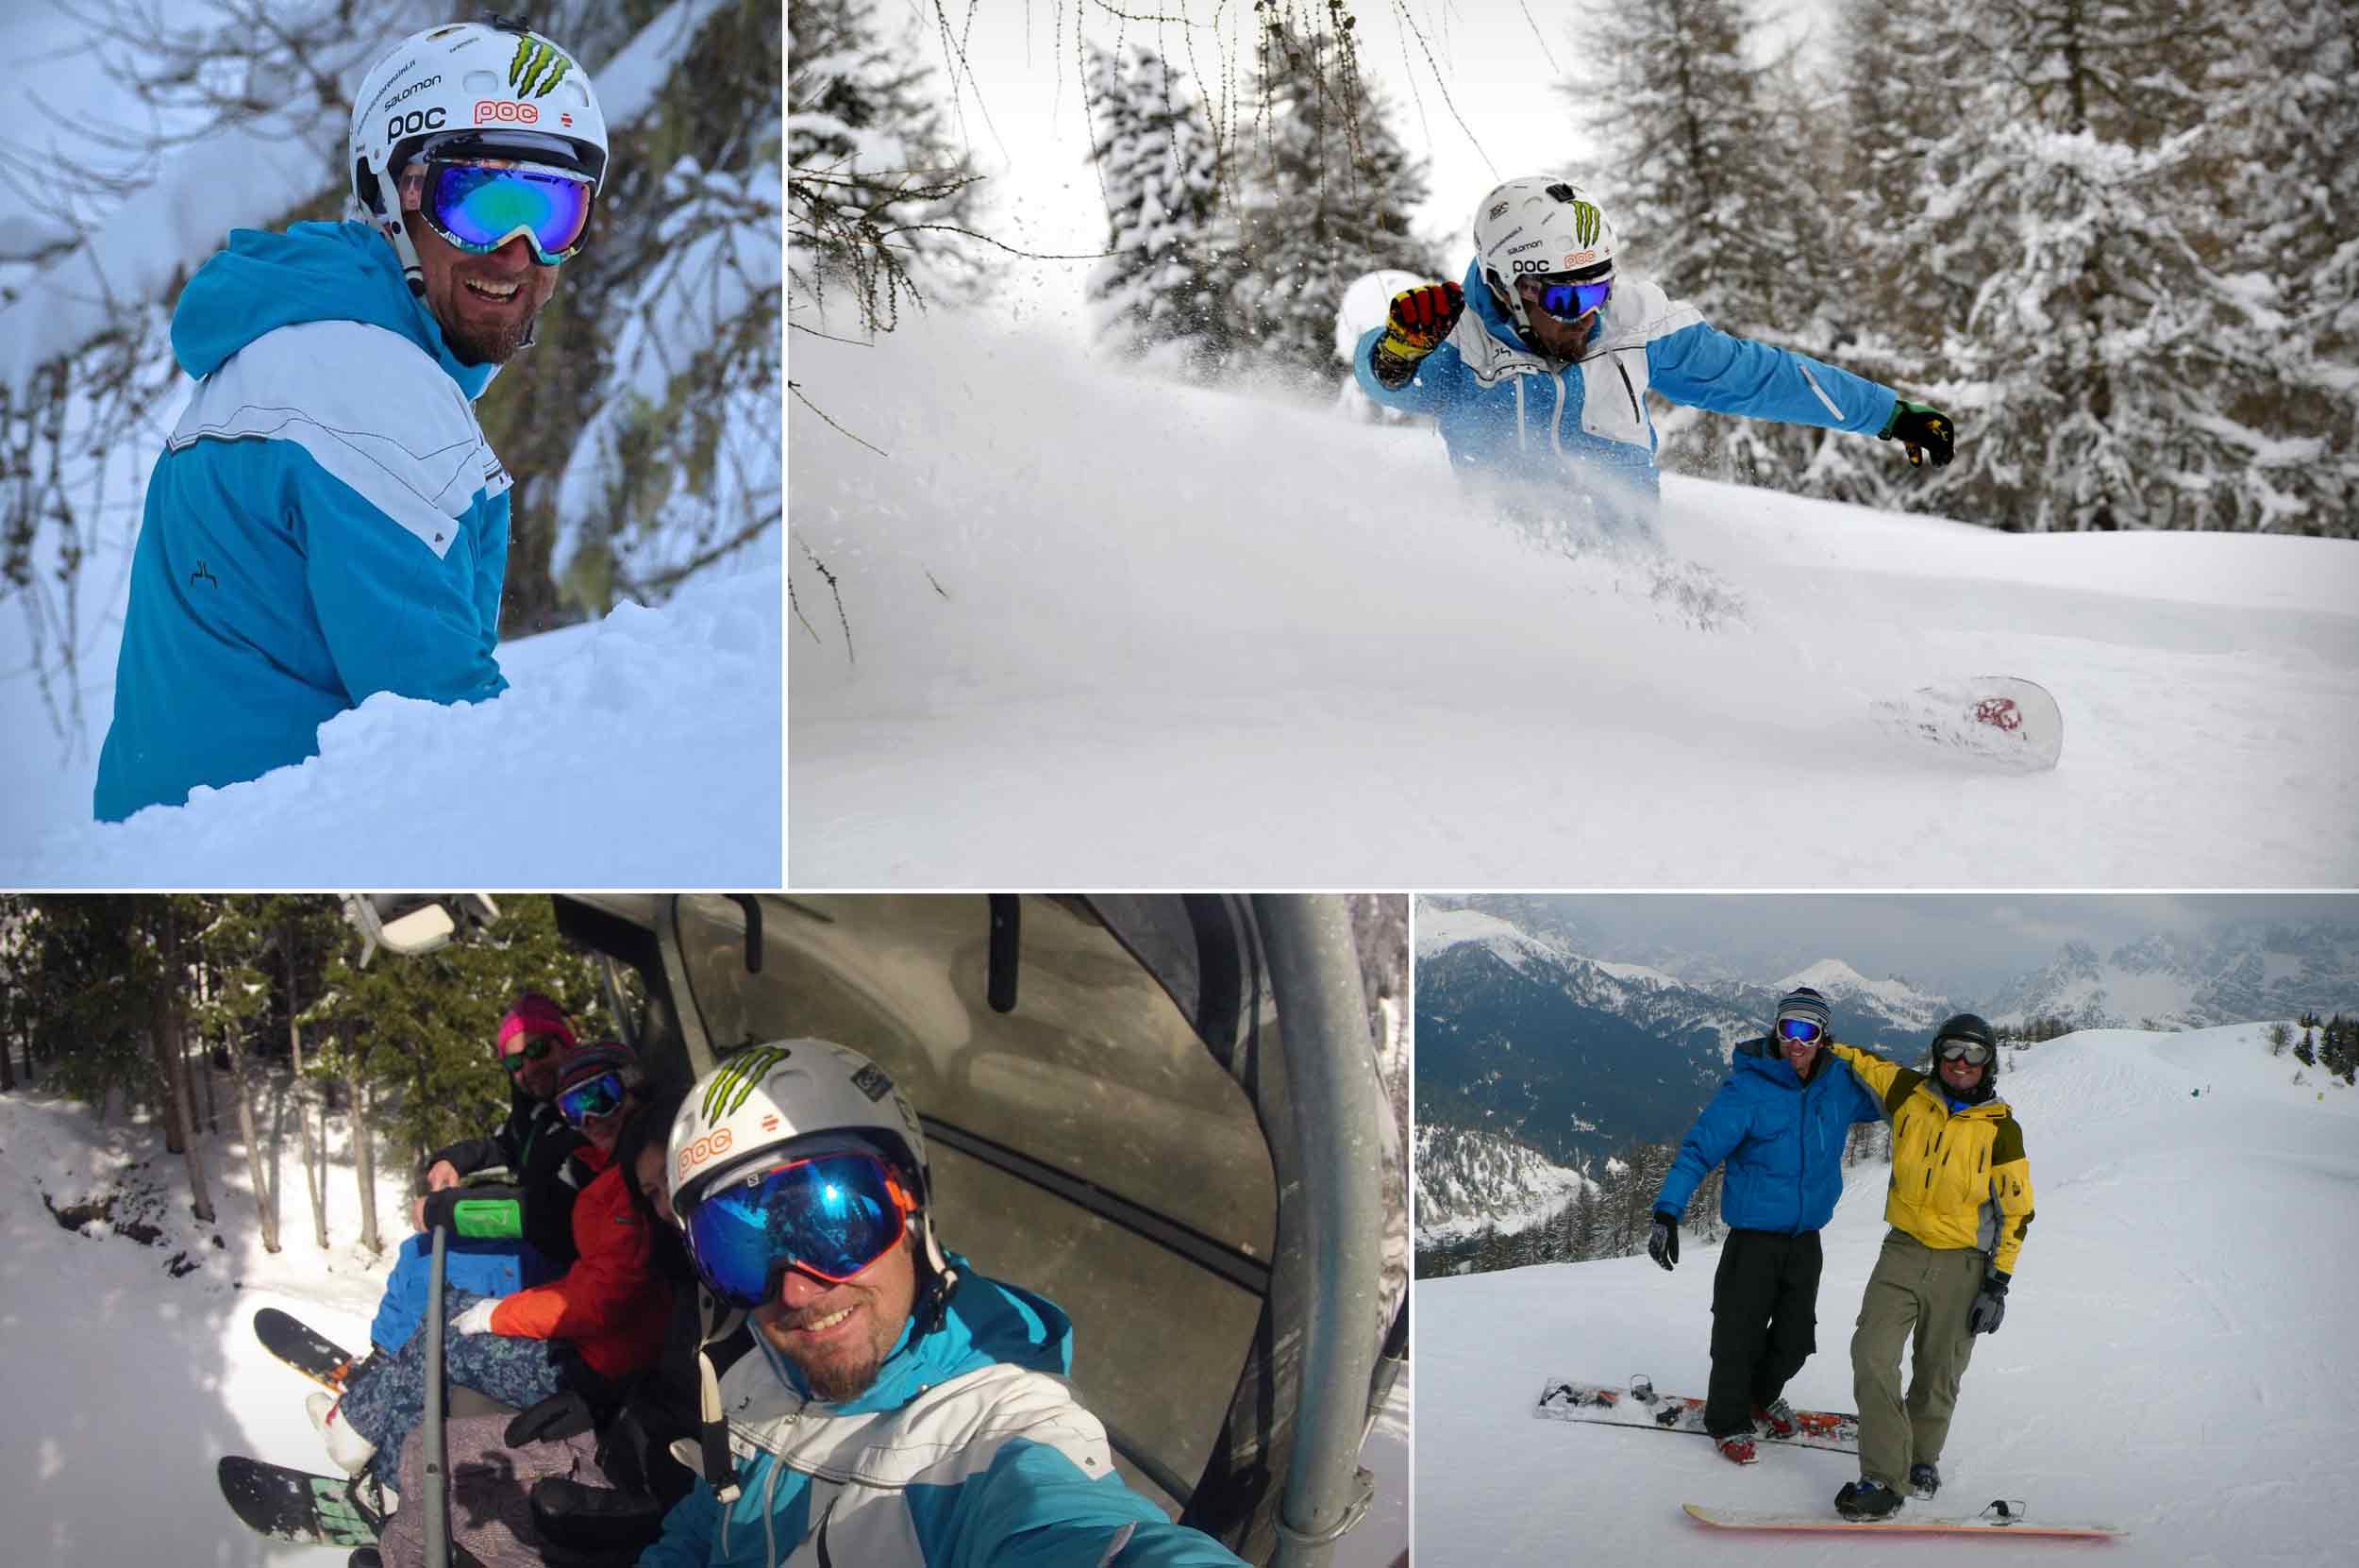 Maestro di SnowBoard Omar Ski Service Lorenzini a Pescul Selva di Cadore Val Fiorentina Dolomiti Comprensorio Civetta Superski